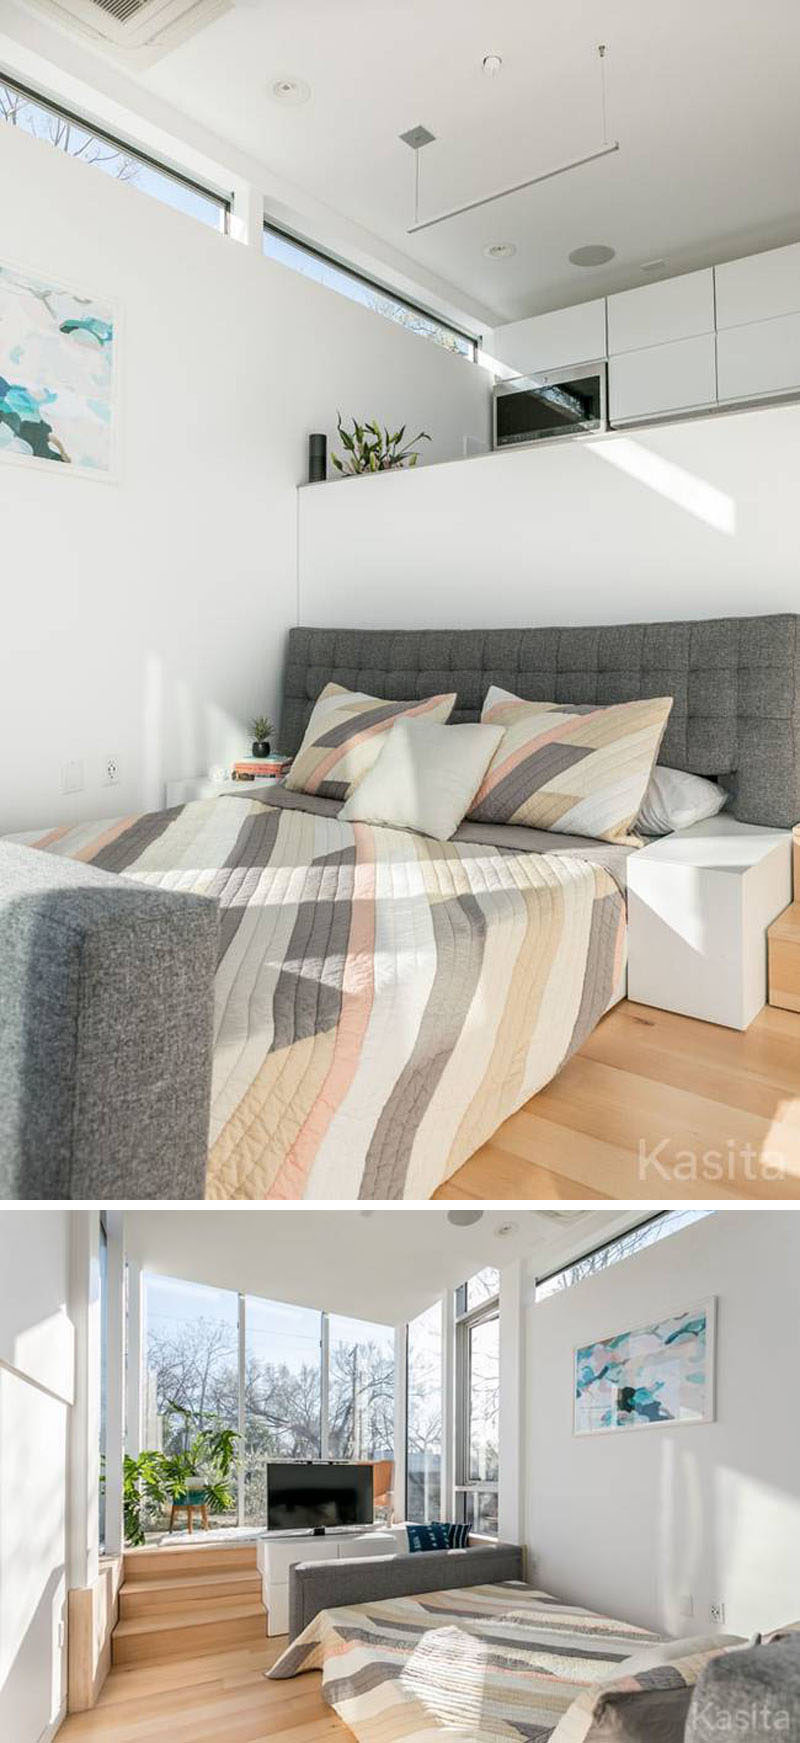 В этом современном крошечном доме диван в гостиной можно трансформировать в кровать размера «queen-size», просто раздвинув его. Частью каркаса дивана стали прикроватные тумбочки. #TinyHouse #TinyHome # Архитектура #SmallLiving # ModernTinyHouse #SmallHouse